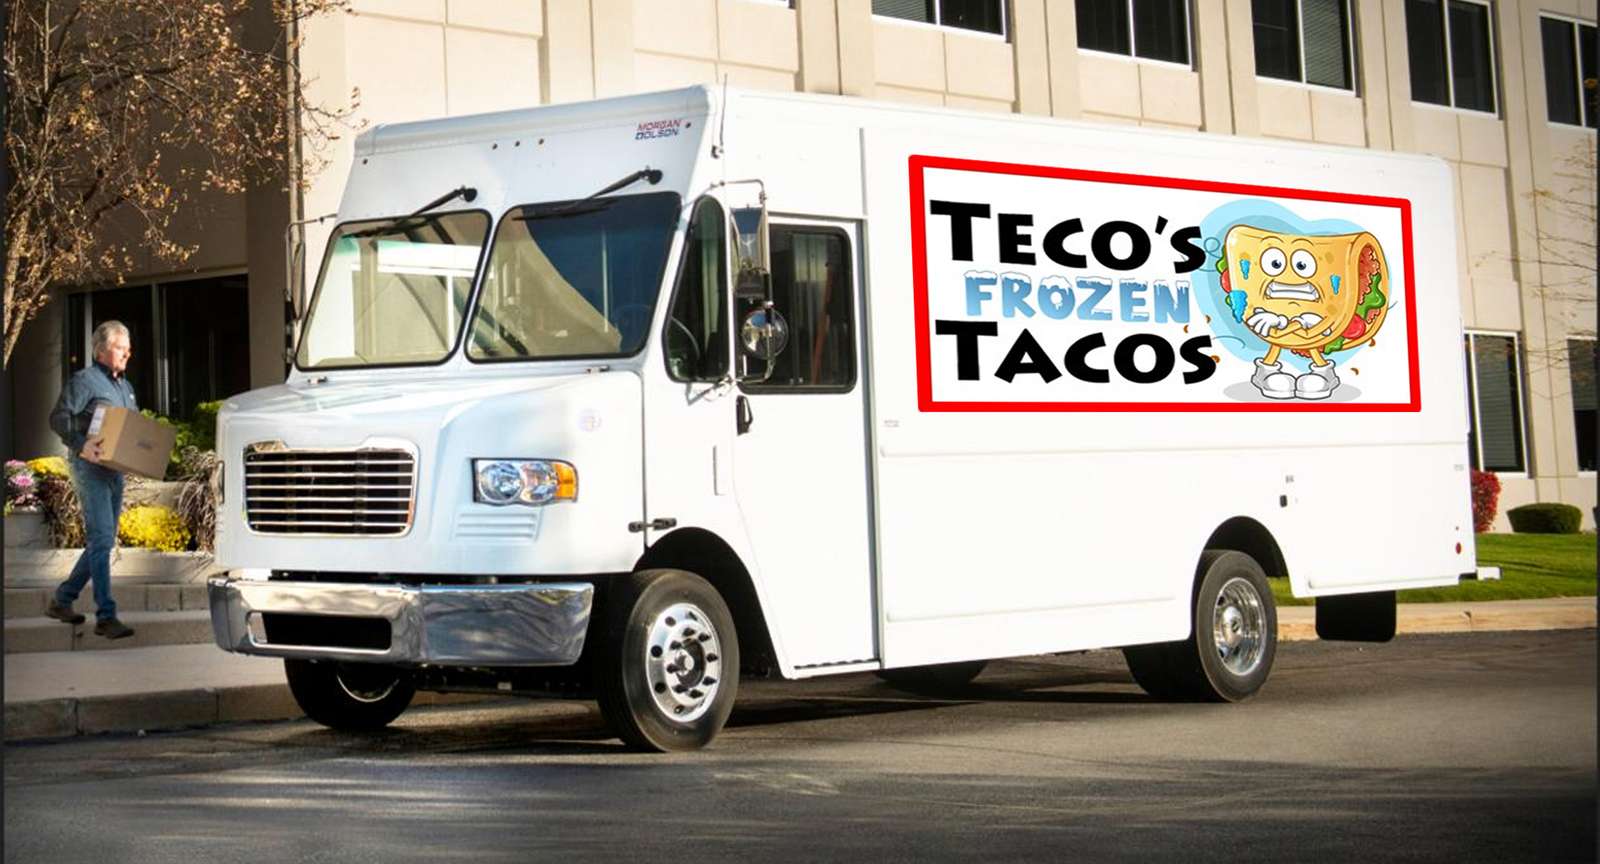 Camionul Taco al lui Teco puzzle online din fotografie